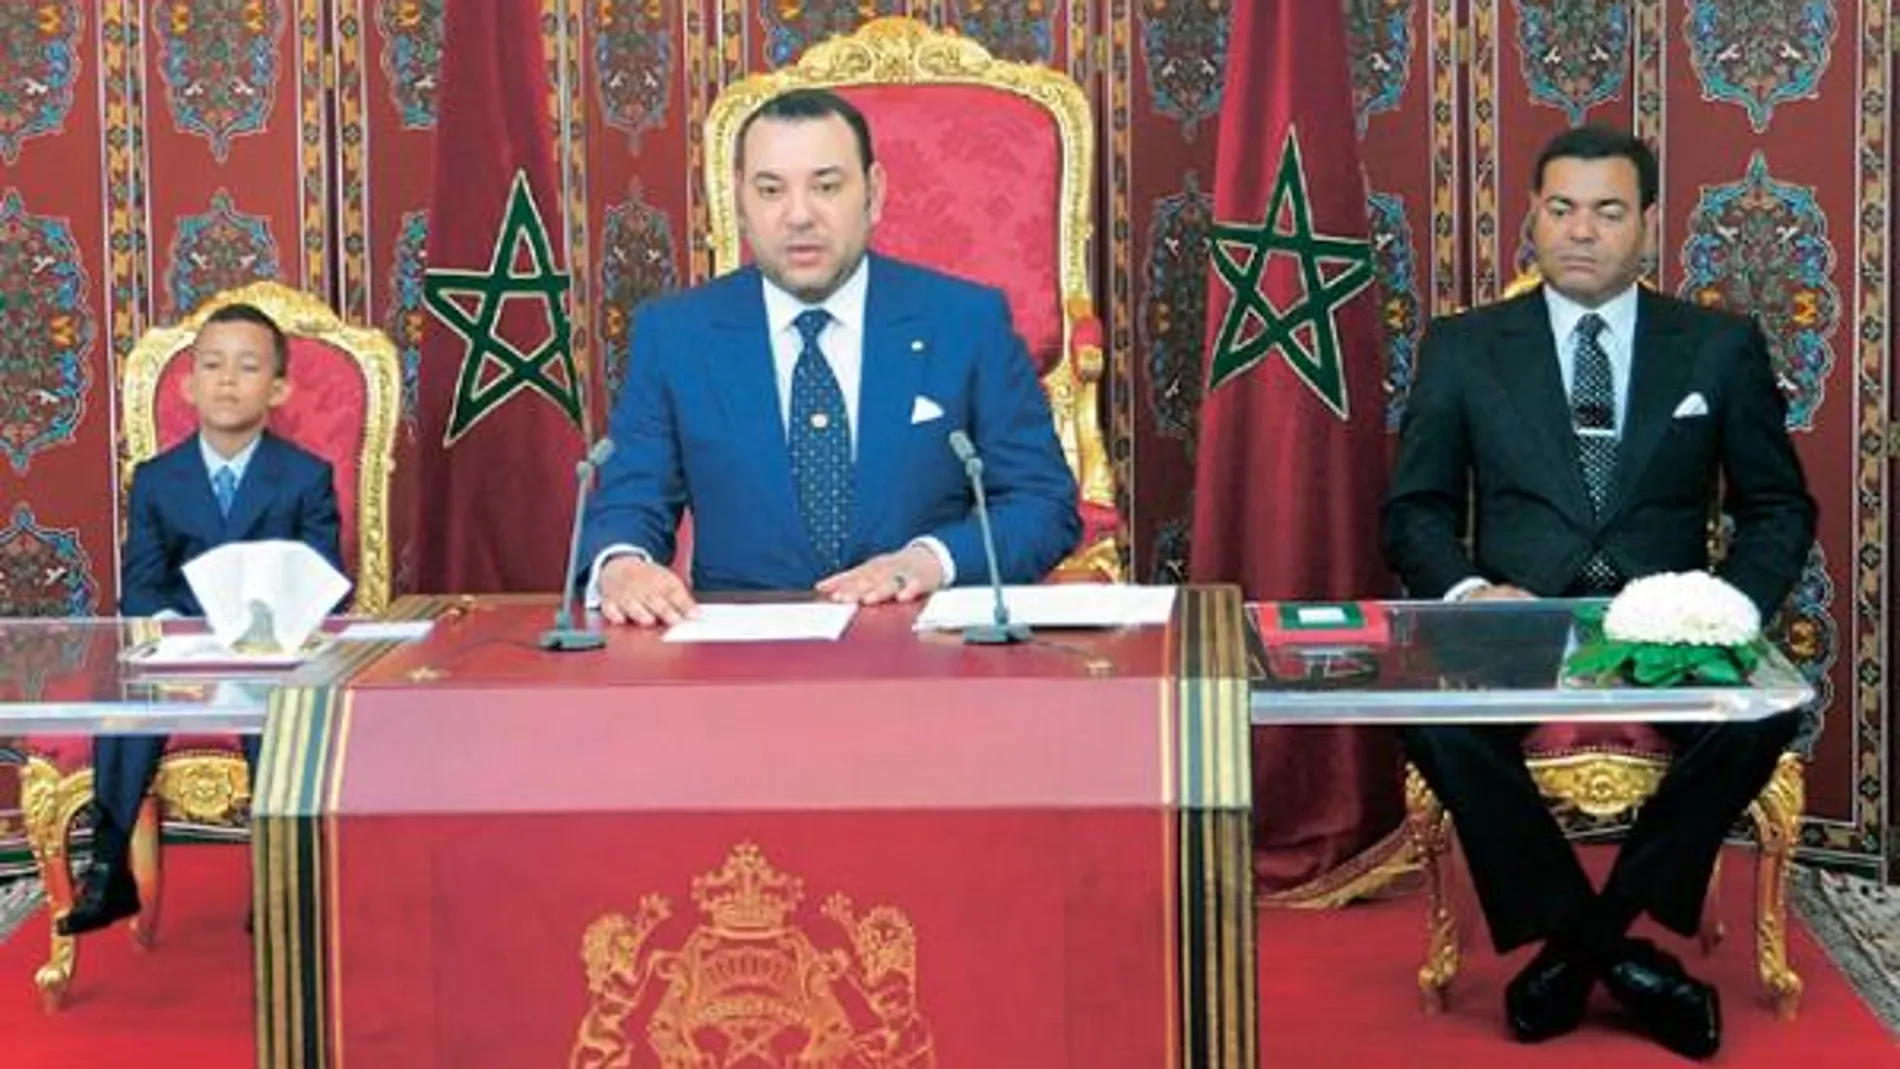 El rey de Marruecos, durante su discurso, flanqueado por su hijo Moulai el Hasan y su hermano Moulai Rachid